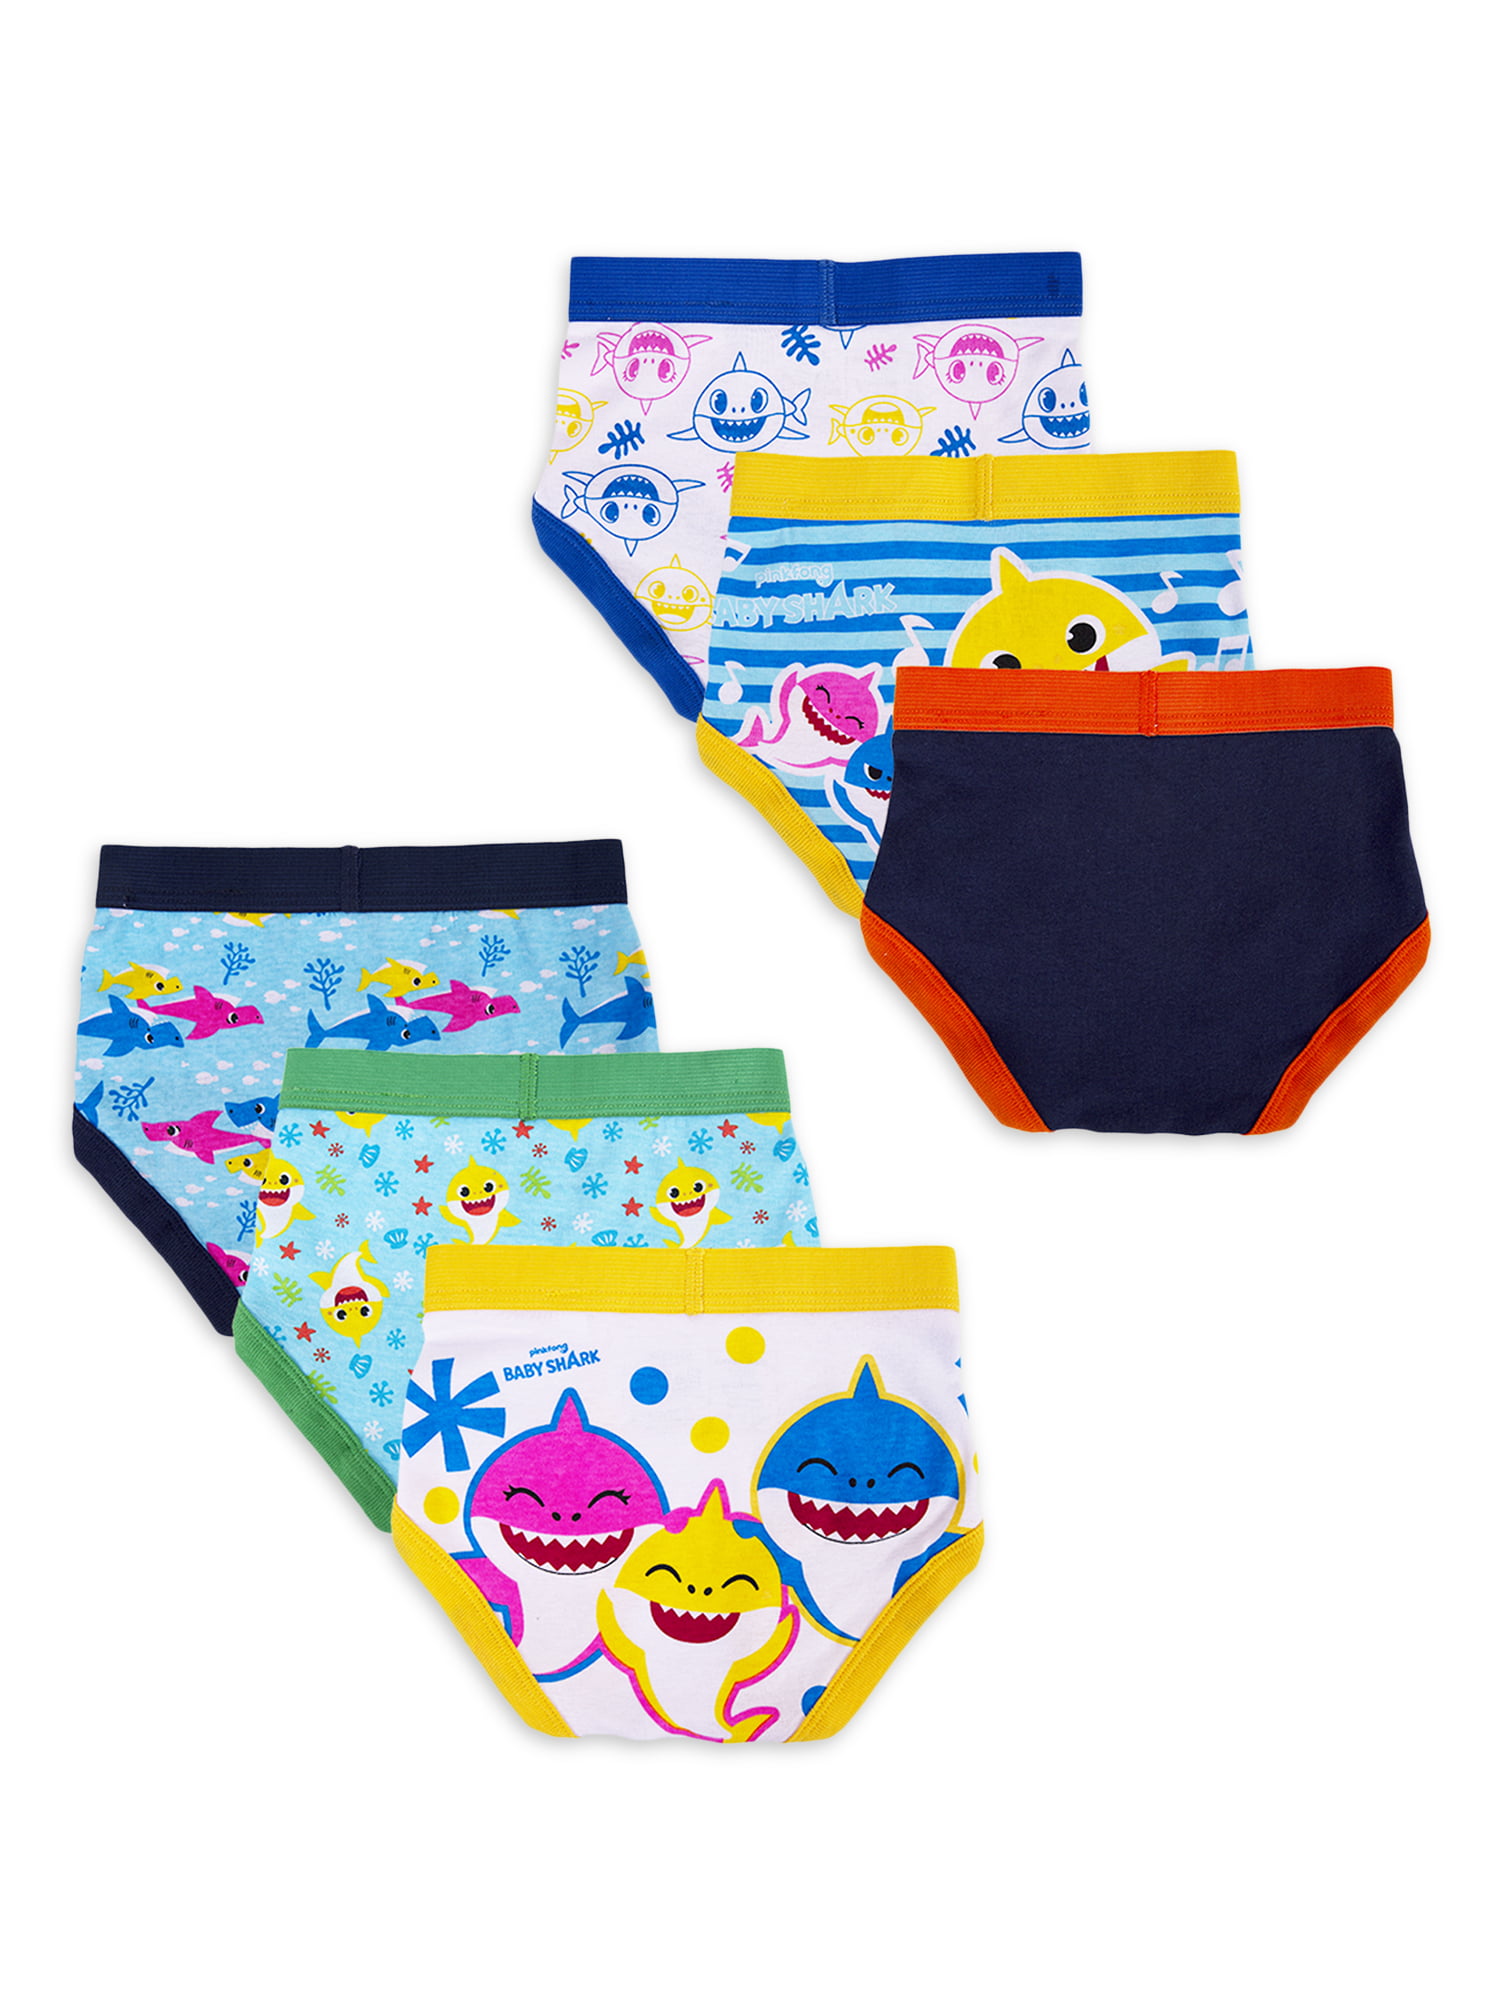 Baby Shark Toddler Boys' Underwear, 6 Pack Sizes 2T-4T - Walmart